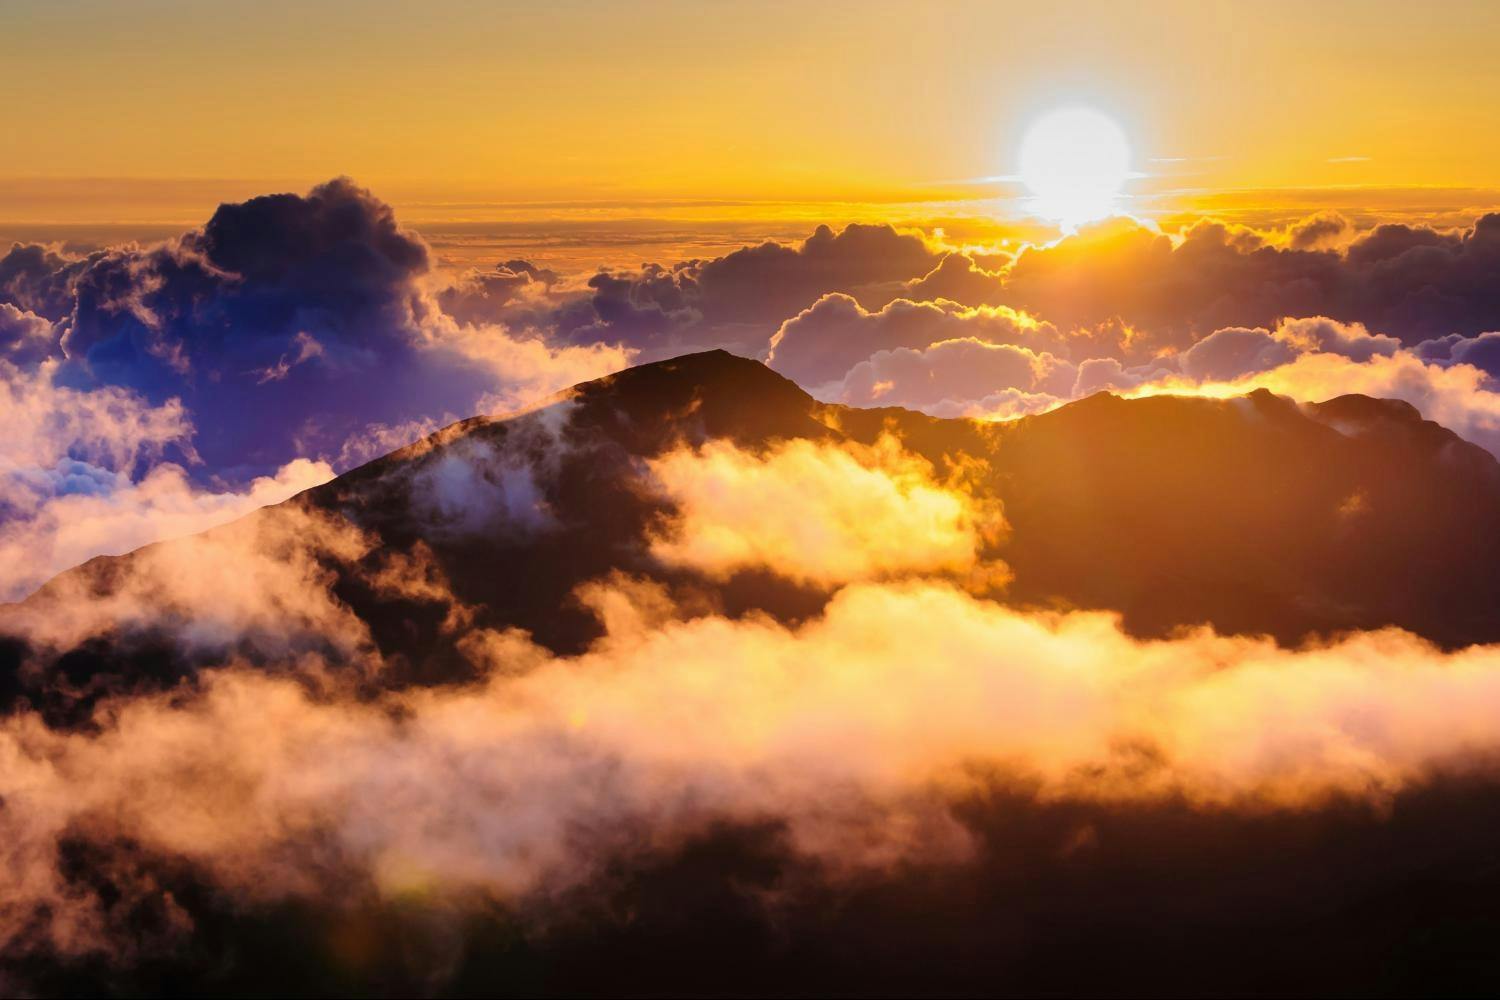 Maui espetacular passeio ao nascer do sol em Haleakala com café da manhã